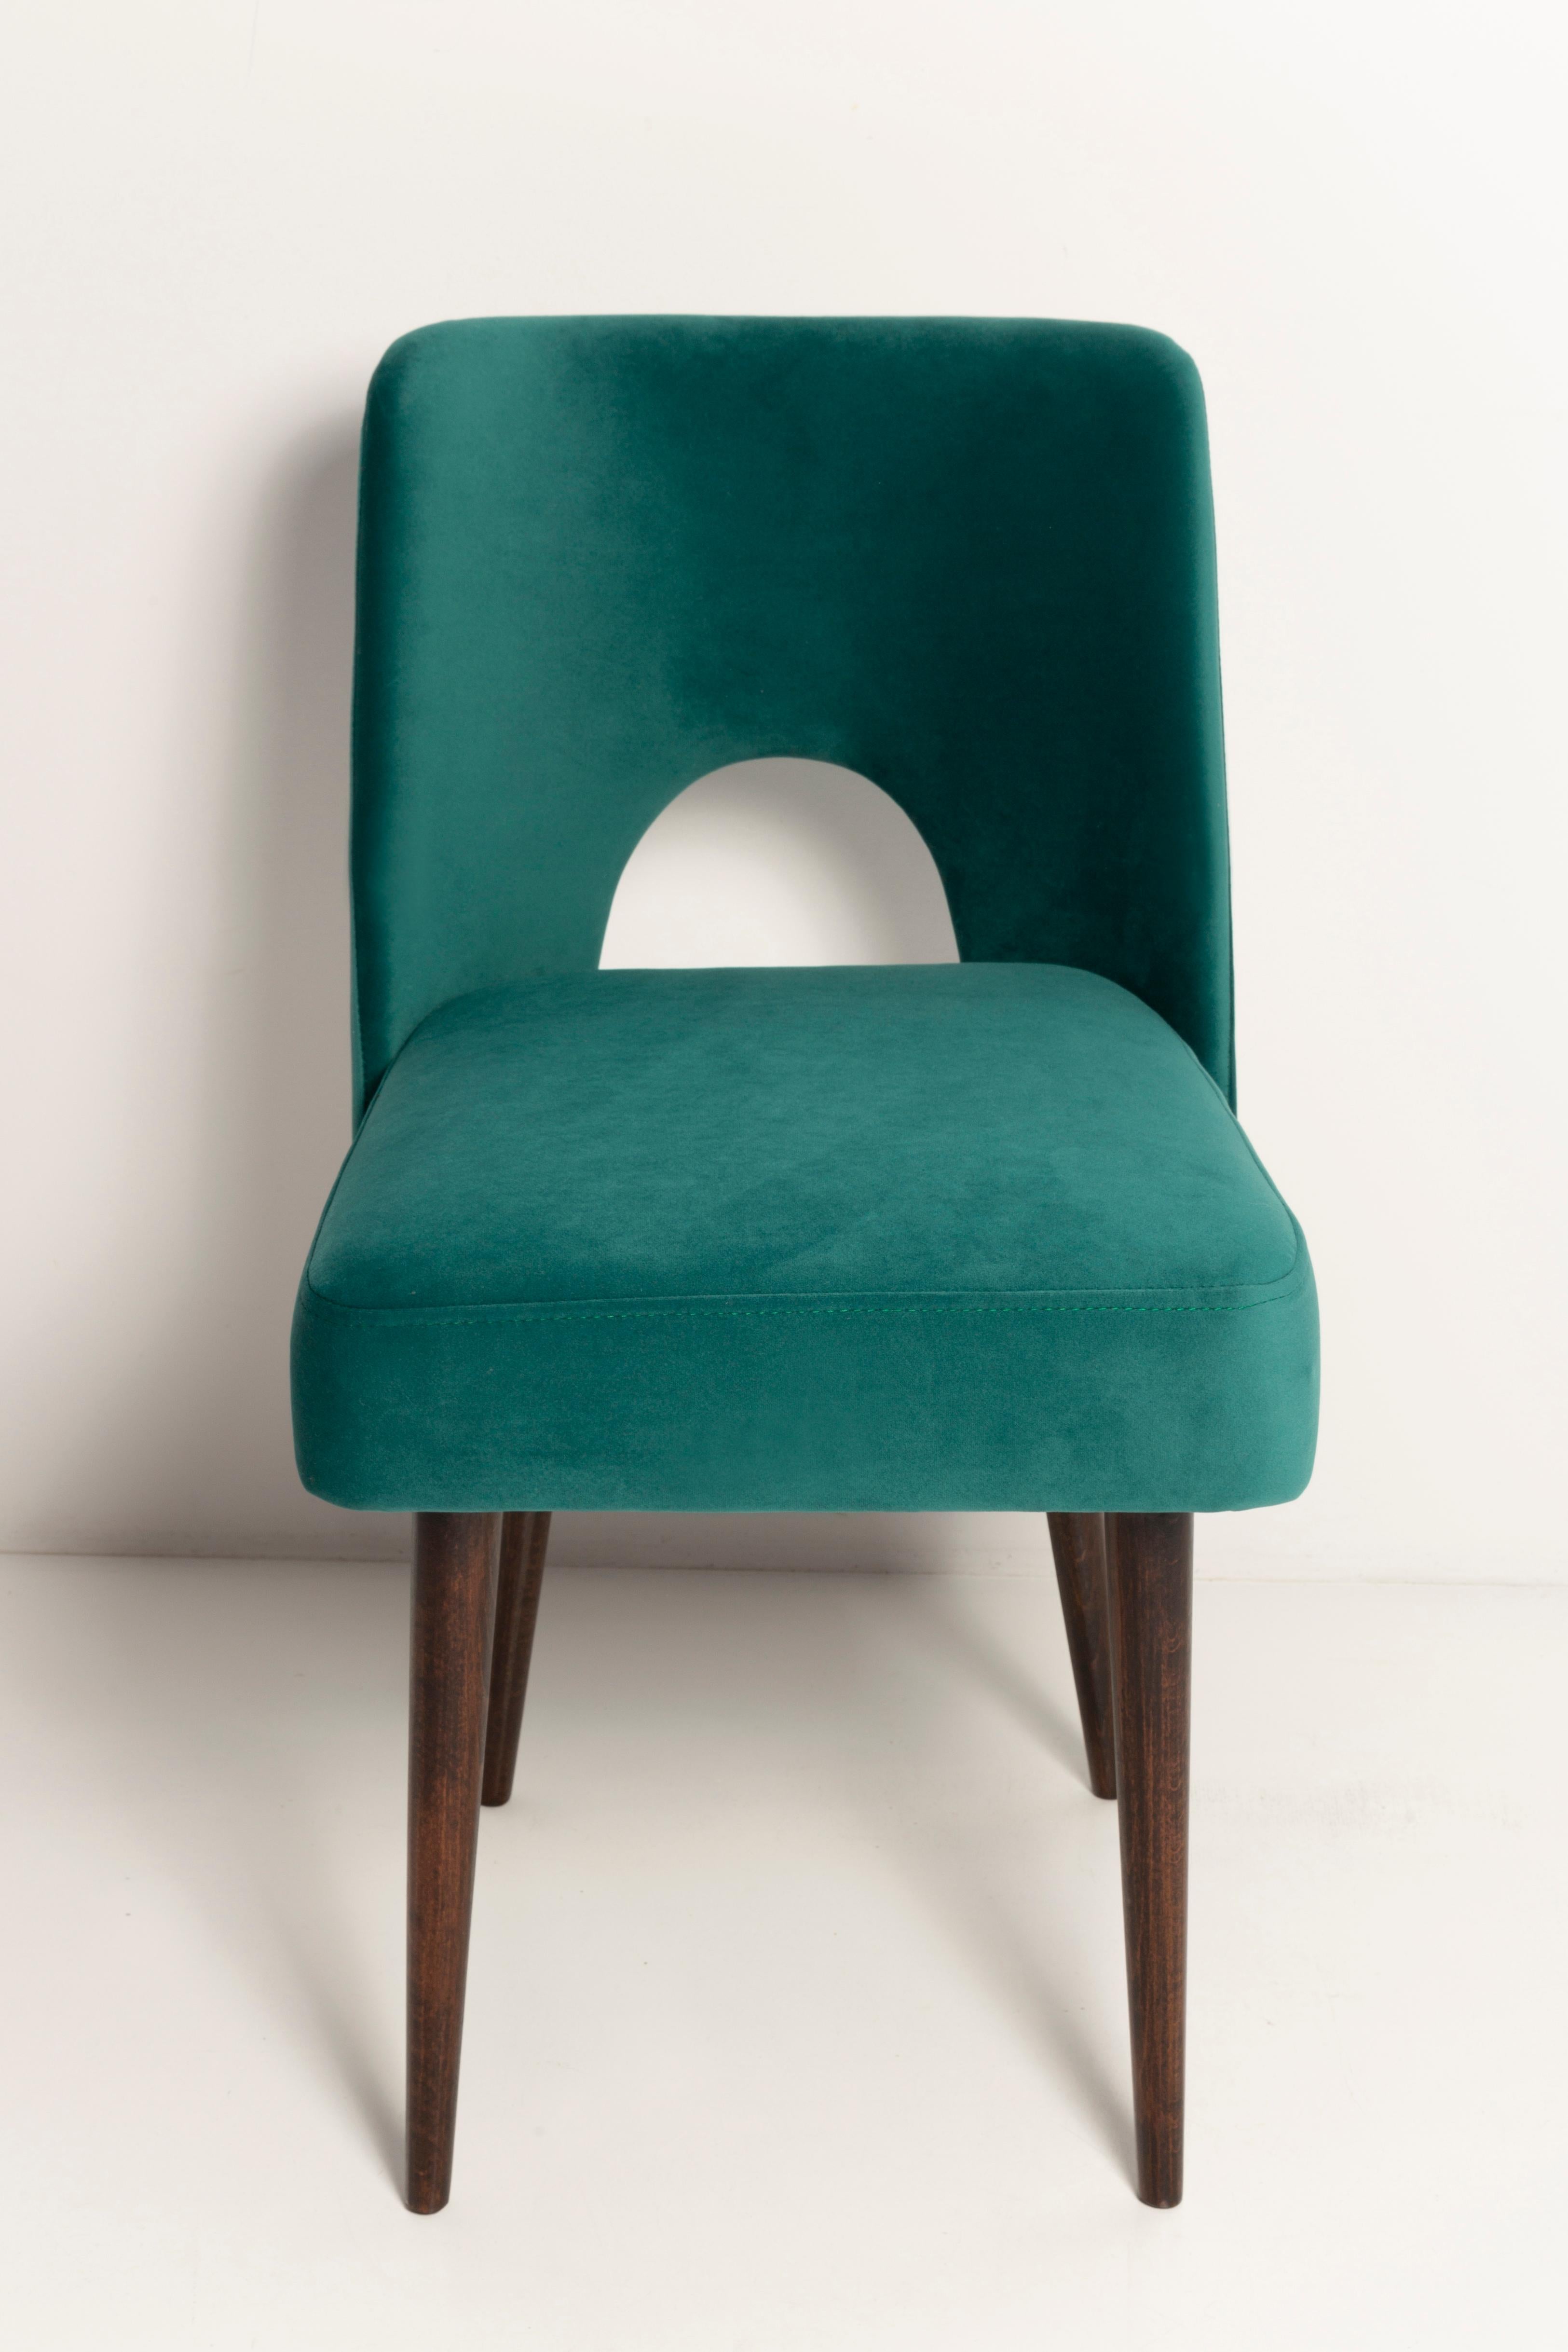 Seven Velvet 'Shell' Chairs, Dark Green Velvet, Dark Beech Wood, Europe, 1960s For Sale 1